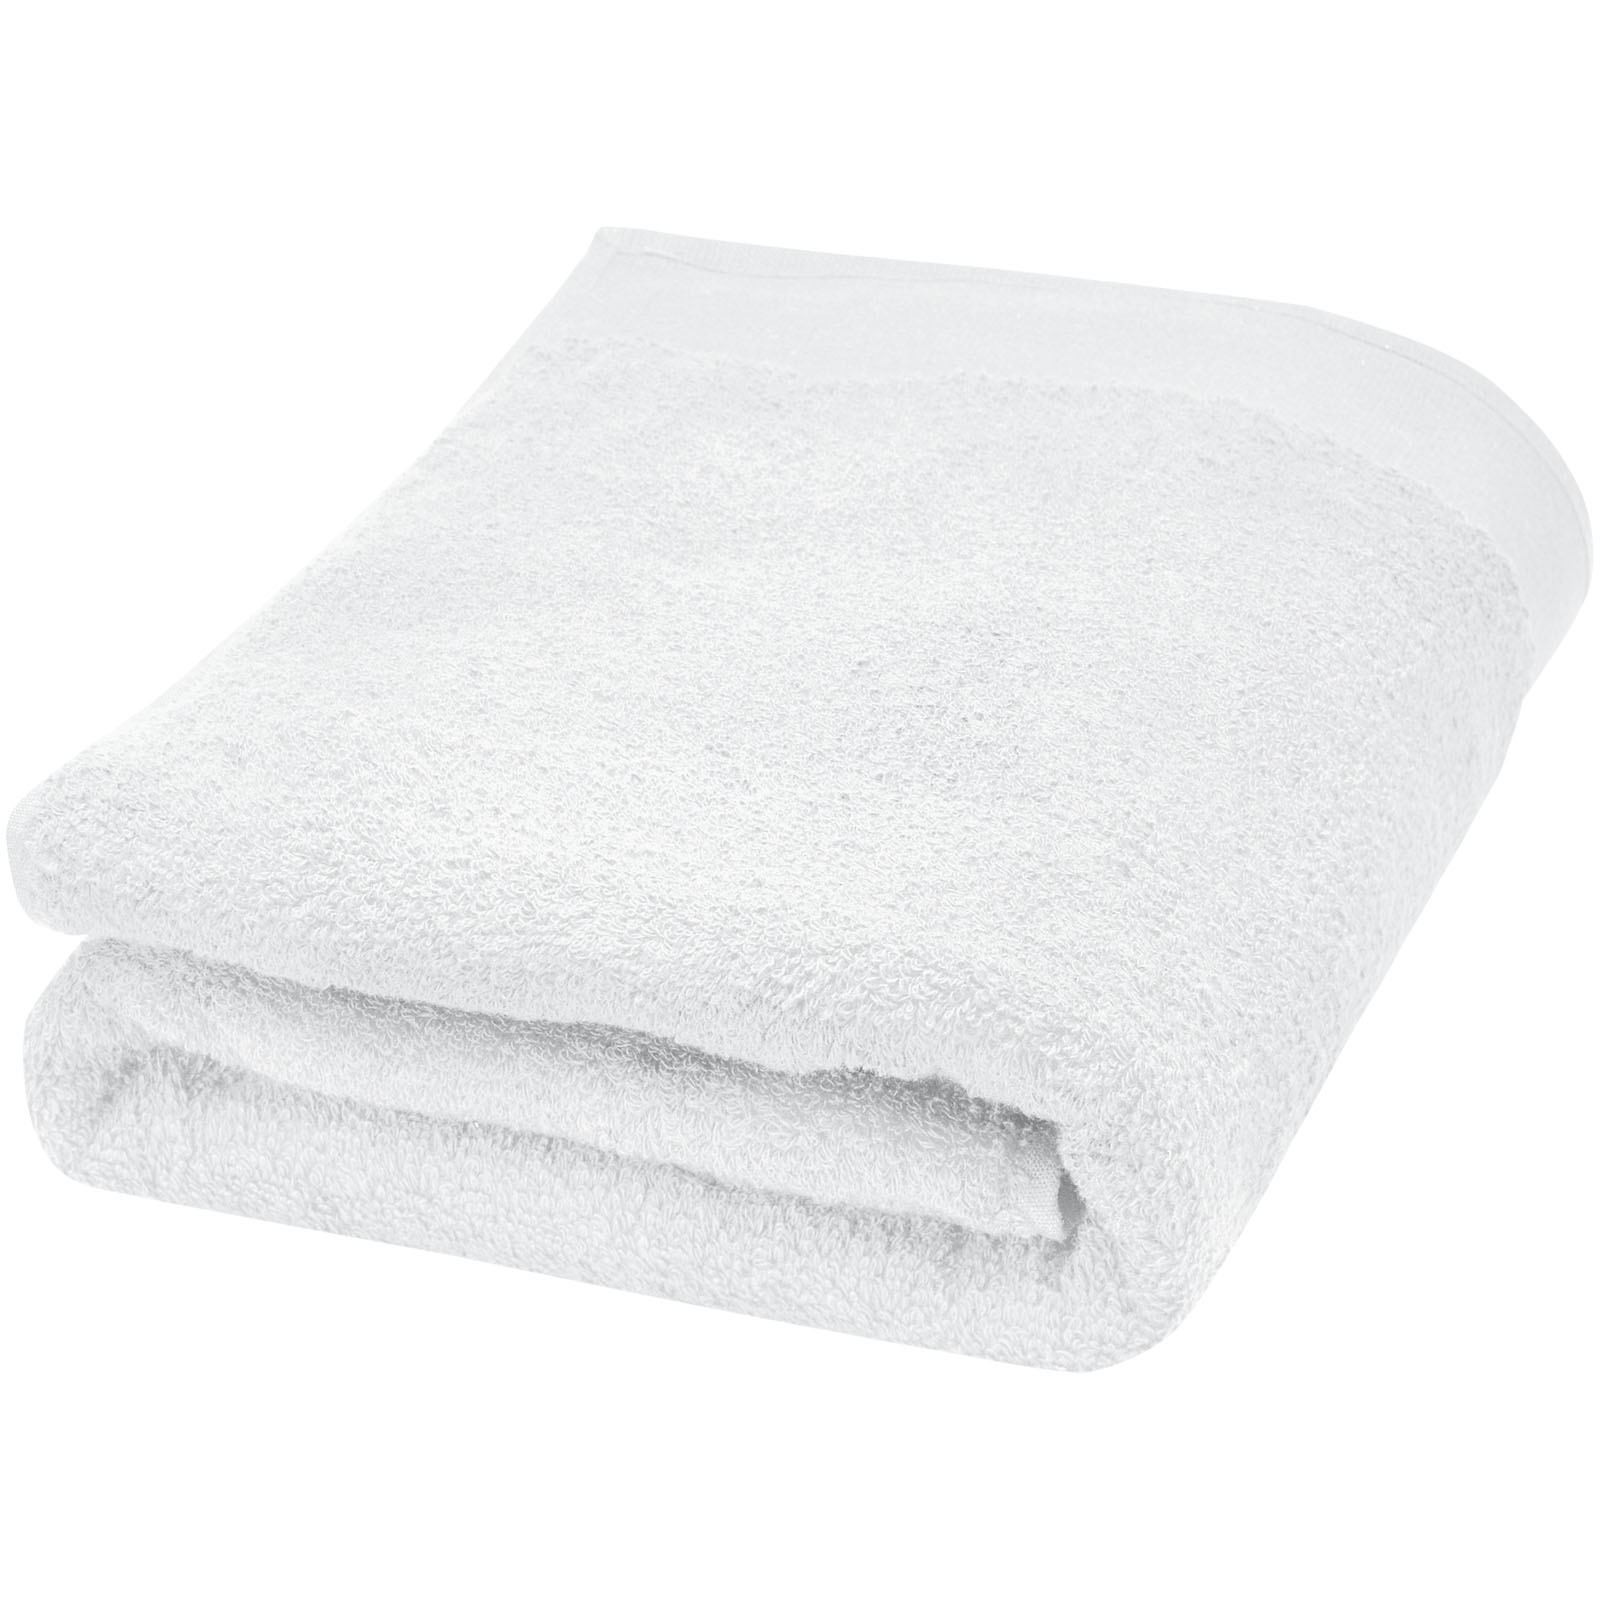 Towels - Ellie 550 g/m² cotton towel 70x140 cm